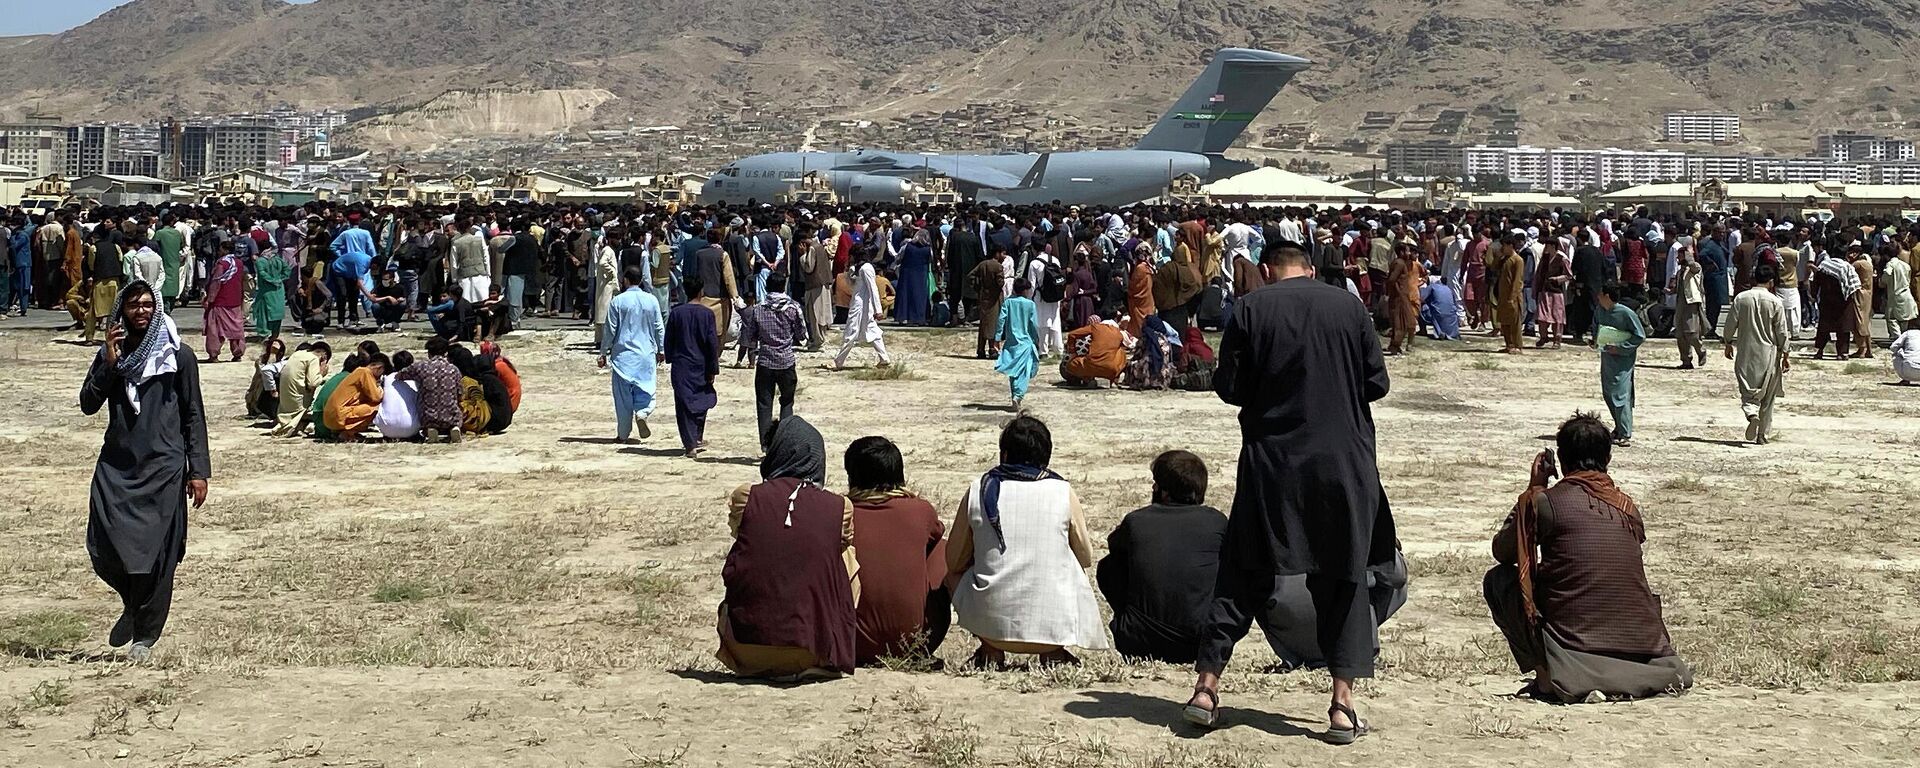 Сотни людей собрались возле транспортного самолета C-17 ВВС США на периметре международного аэропорта в Кабуле - Sputnik Узбекистан, 1920, 31.08.2021